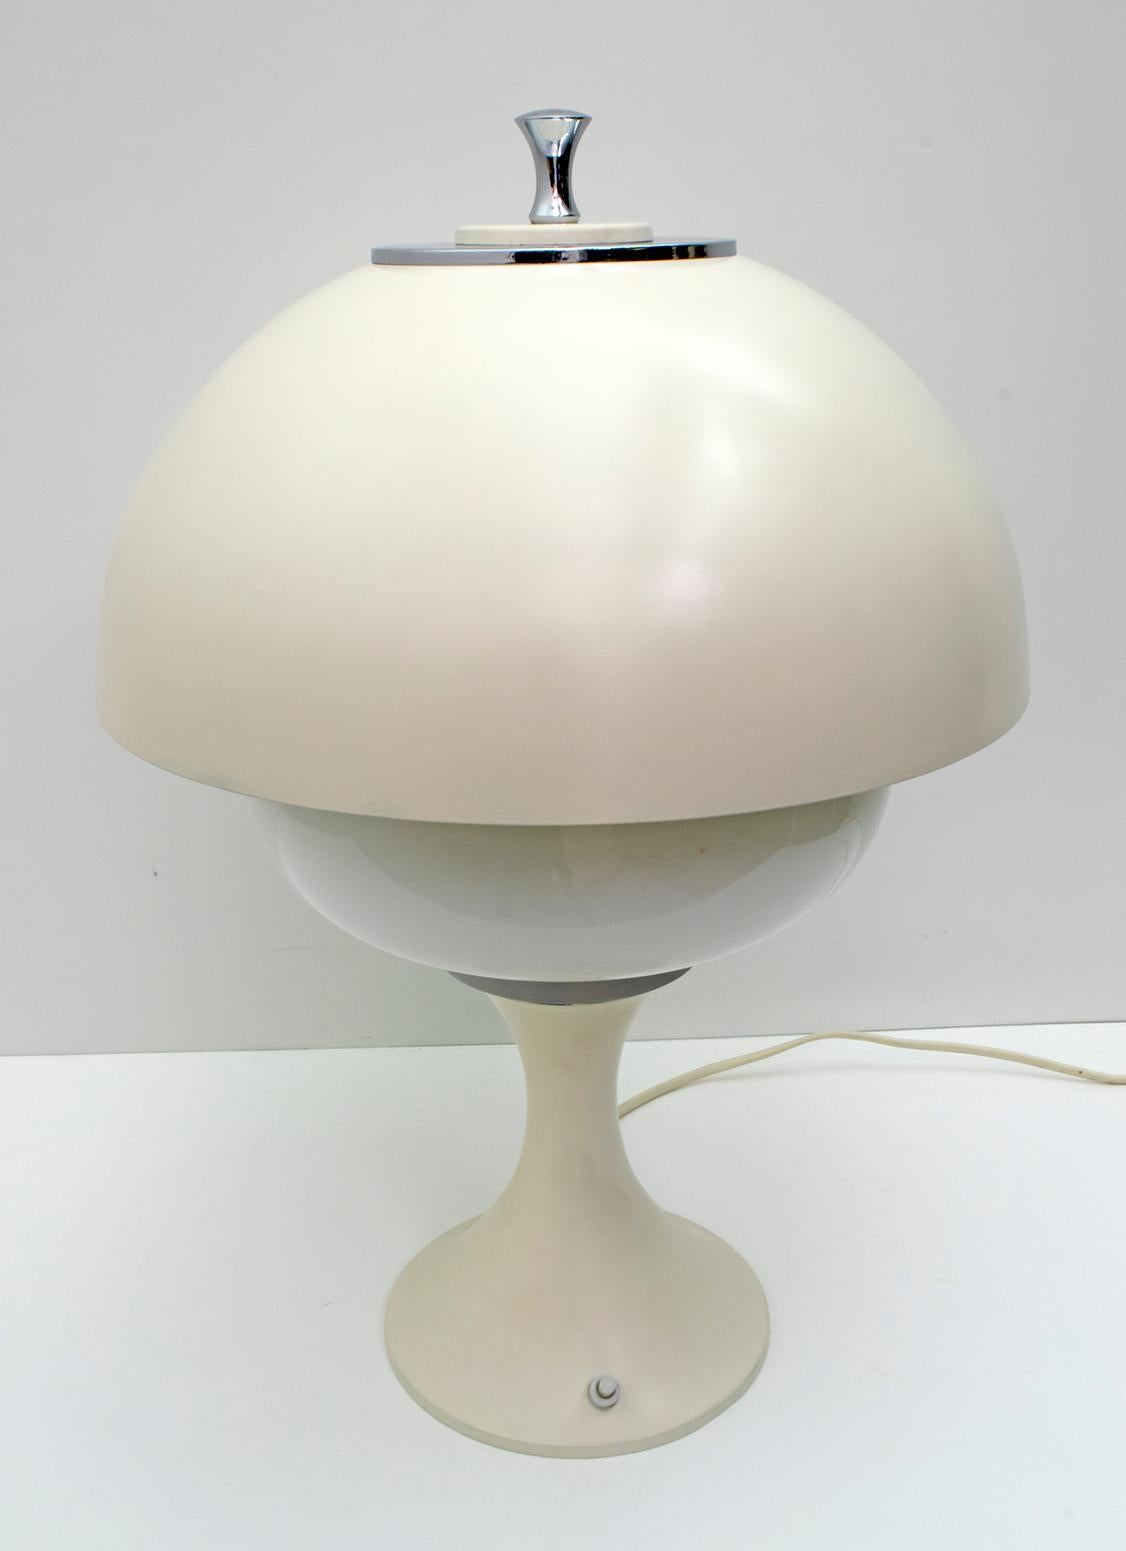 Pair of After Gaetano Sciolari Midcentury Italian Lamps, 1960s For Sale 1